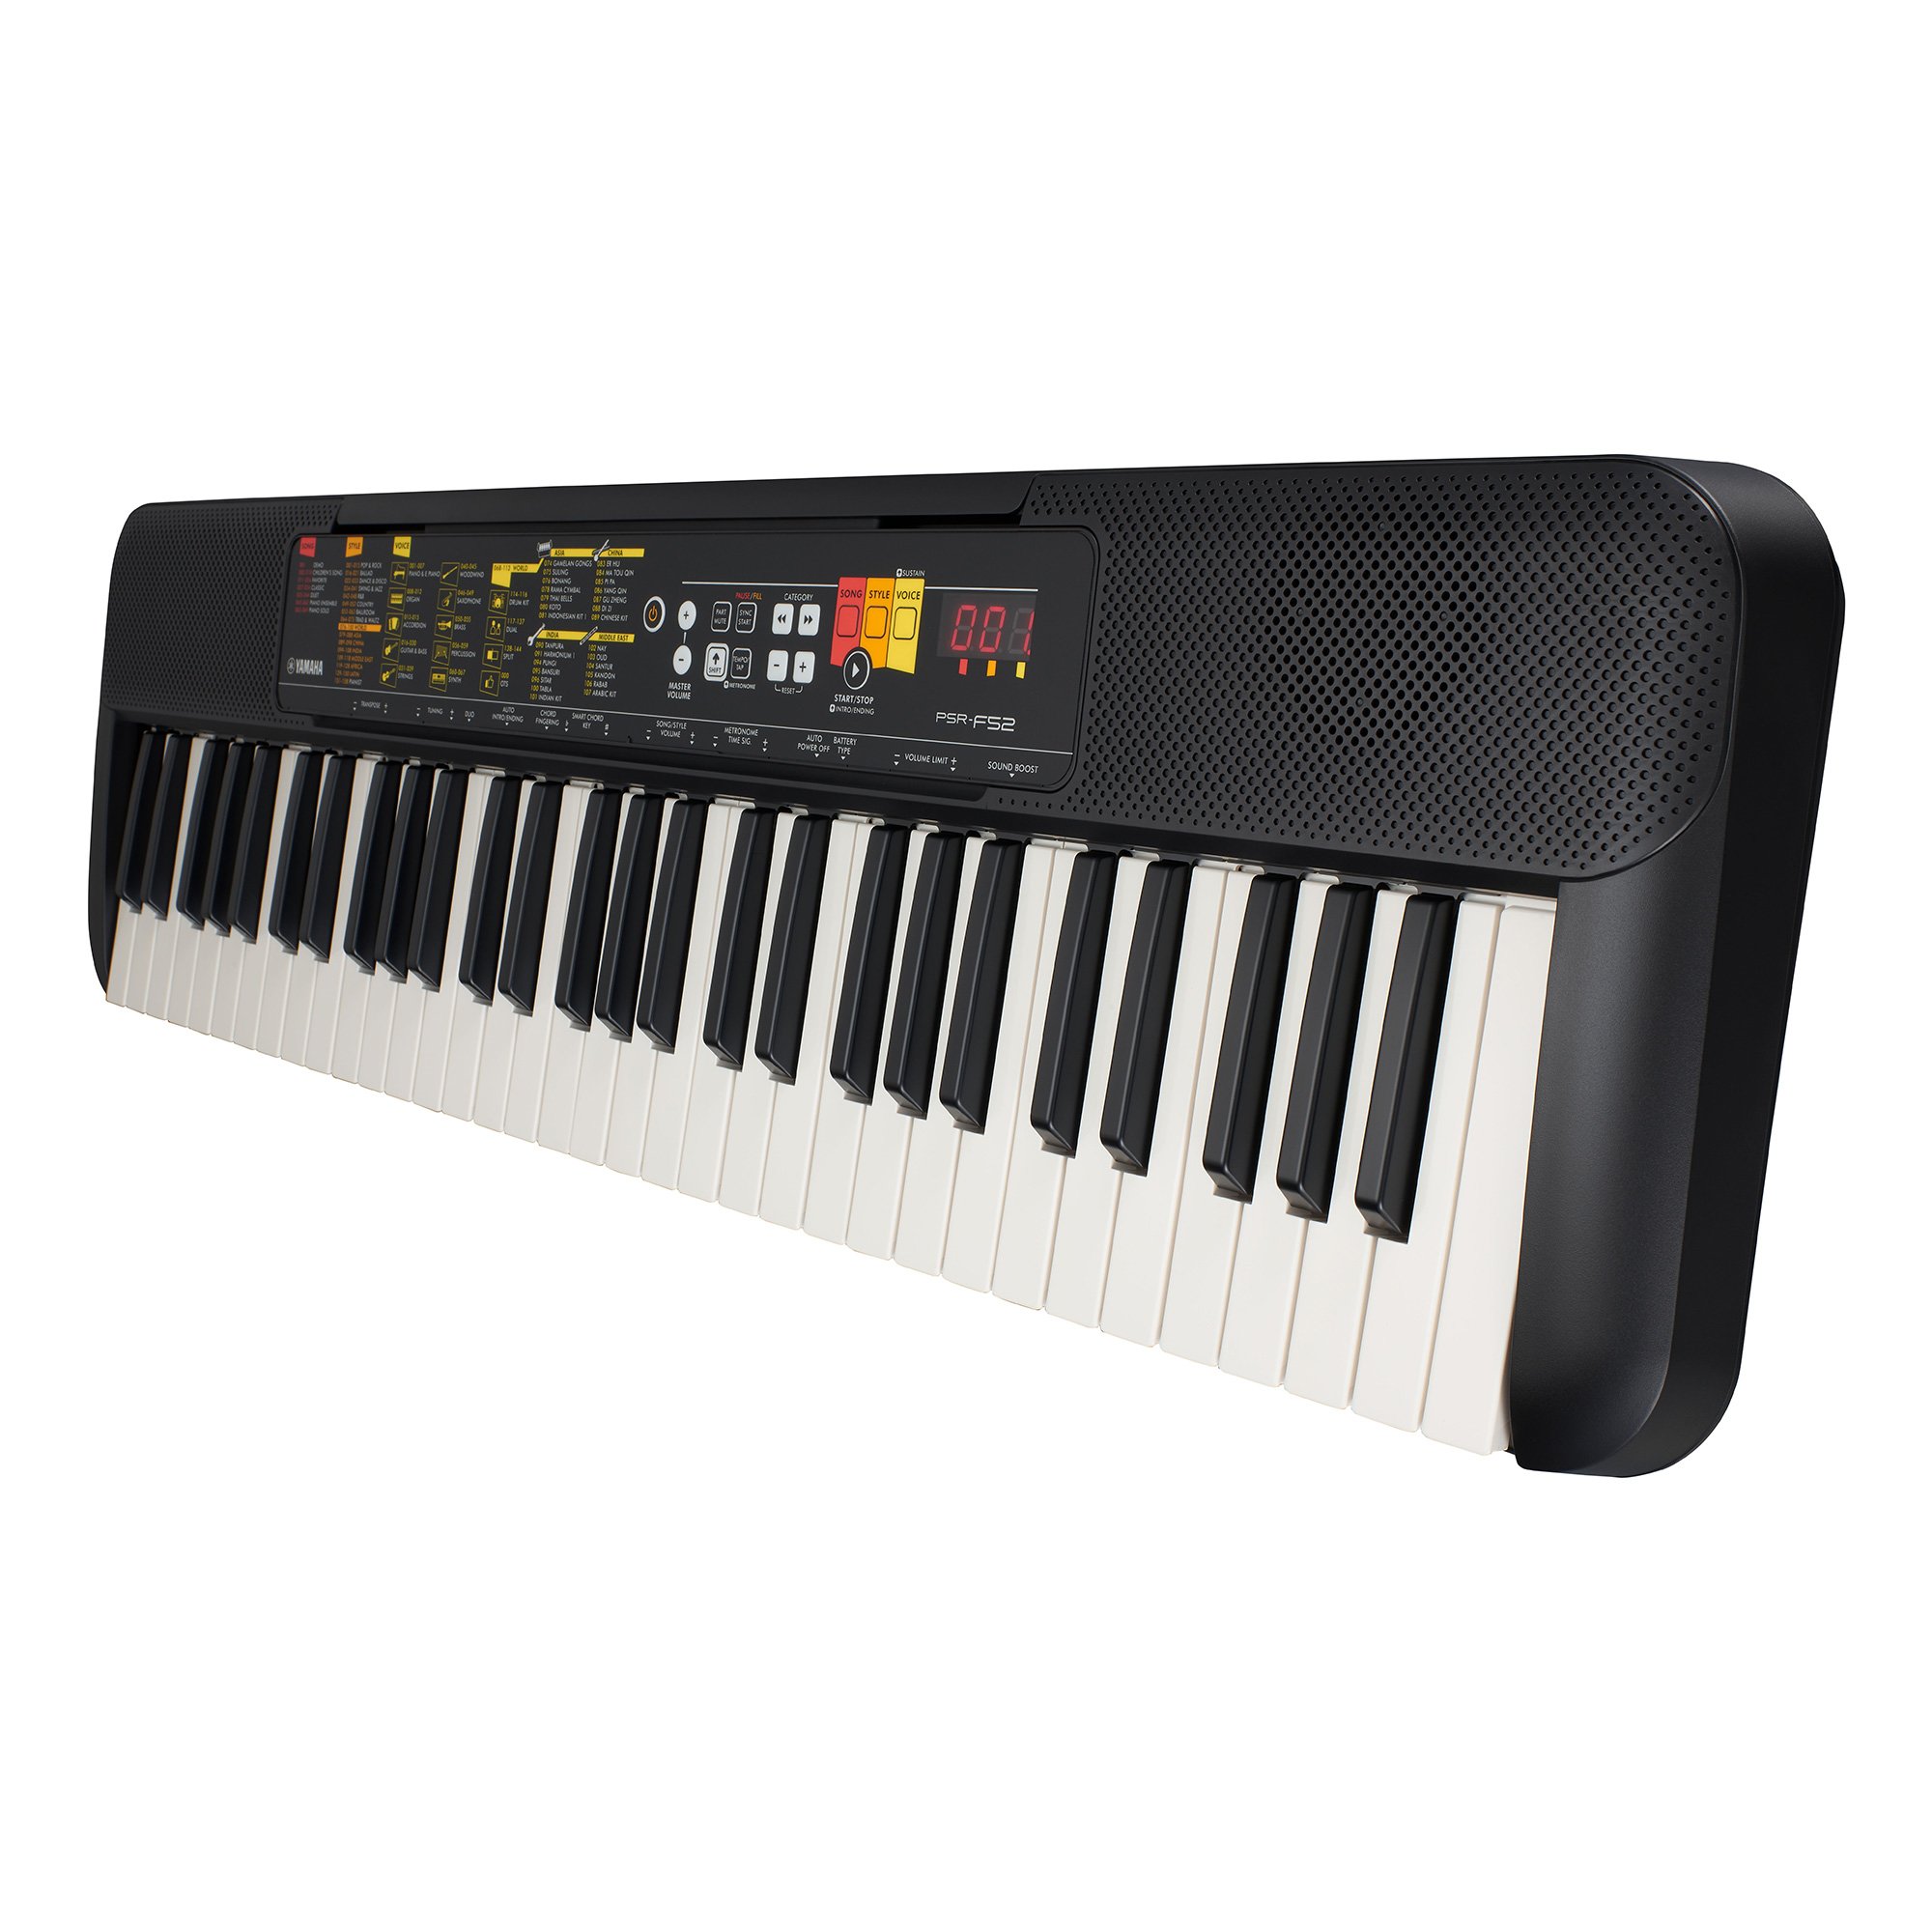 Đàn Organ điện tử/ Portable Keyboard - Yamaha PSR-F52 (PSR F52) - Màu đen - Hàng chính hãng